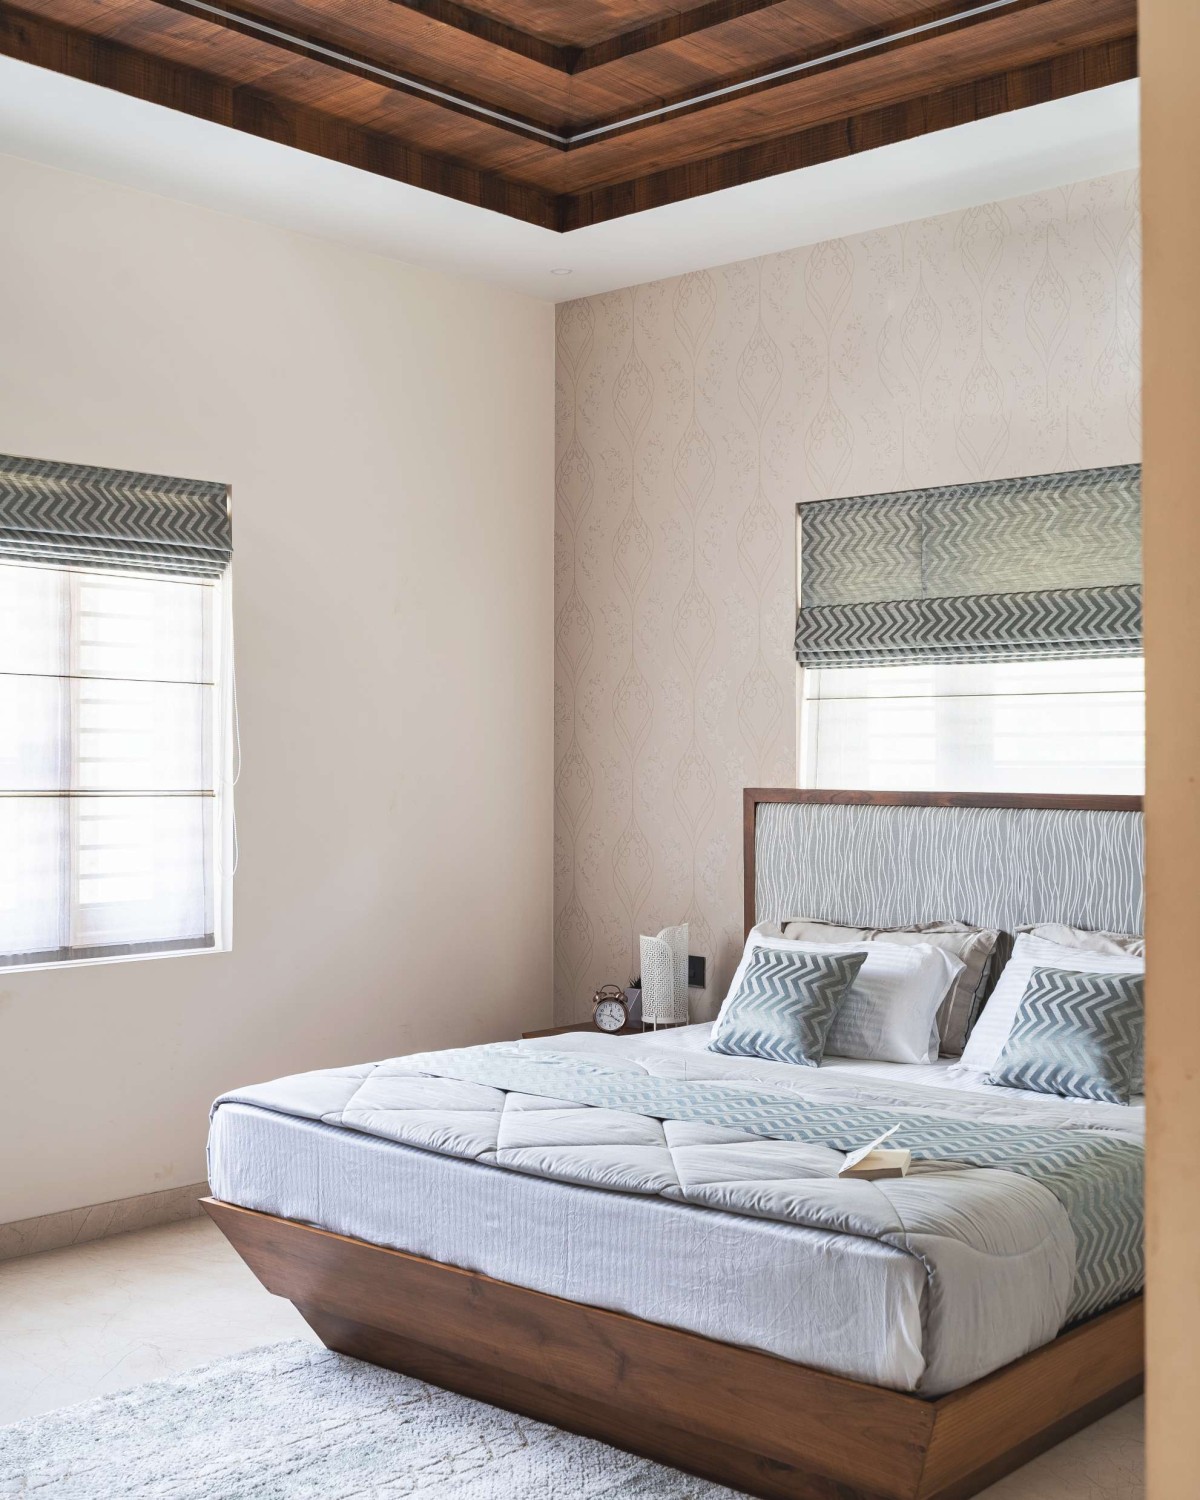 Bedroom 2 of Avant Garde by Prekshaa Design Studio